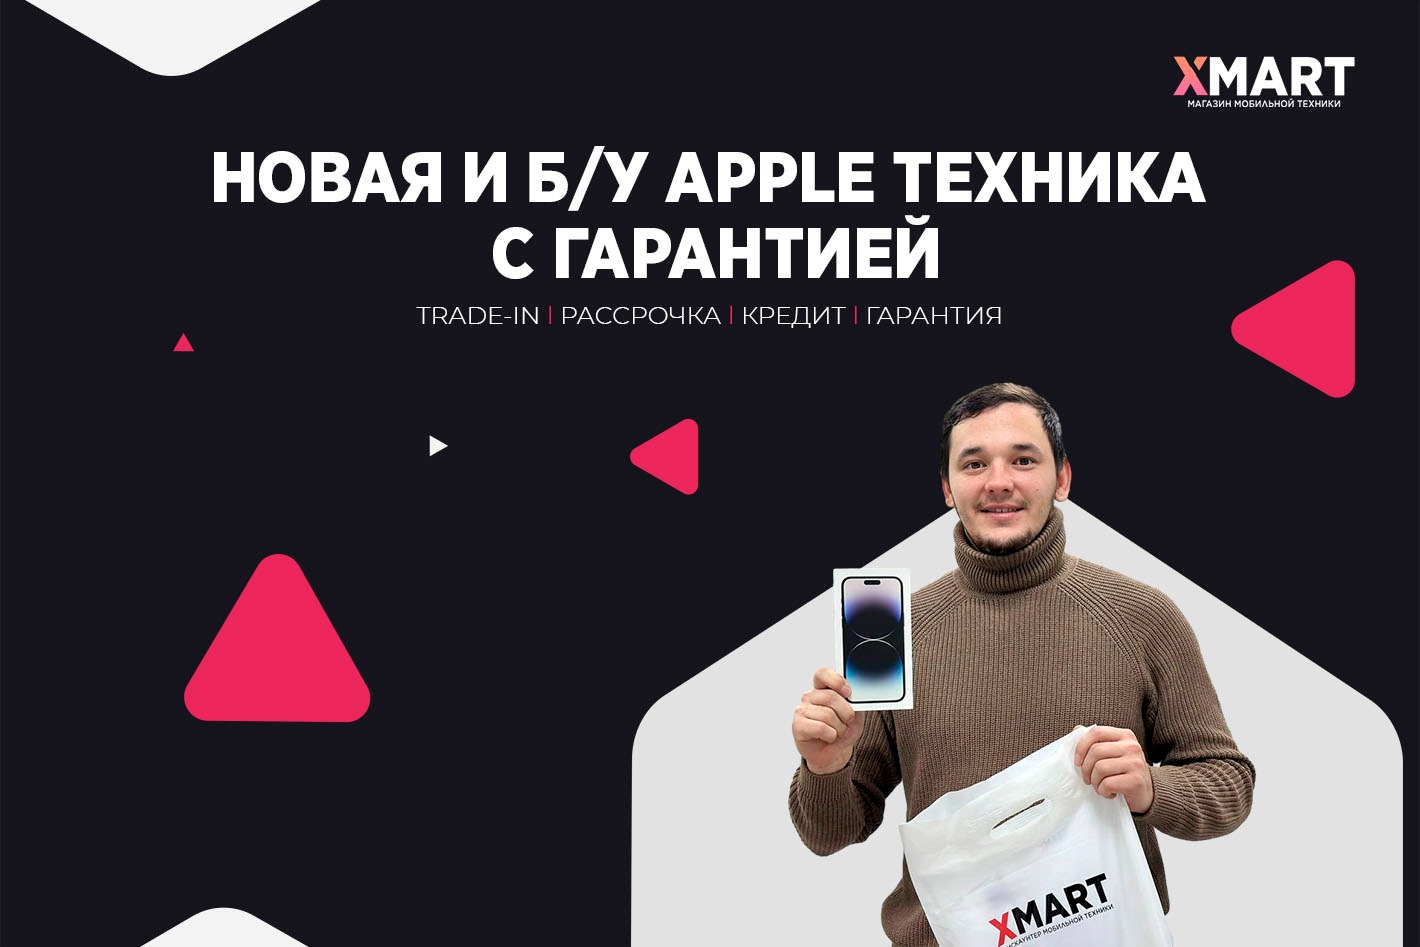 XMART - магазин мобильной техники г. Челябинск. Профиль пользователя на  Авито